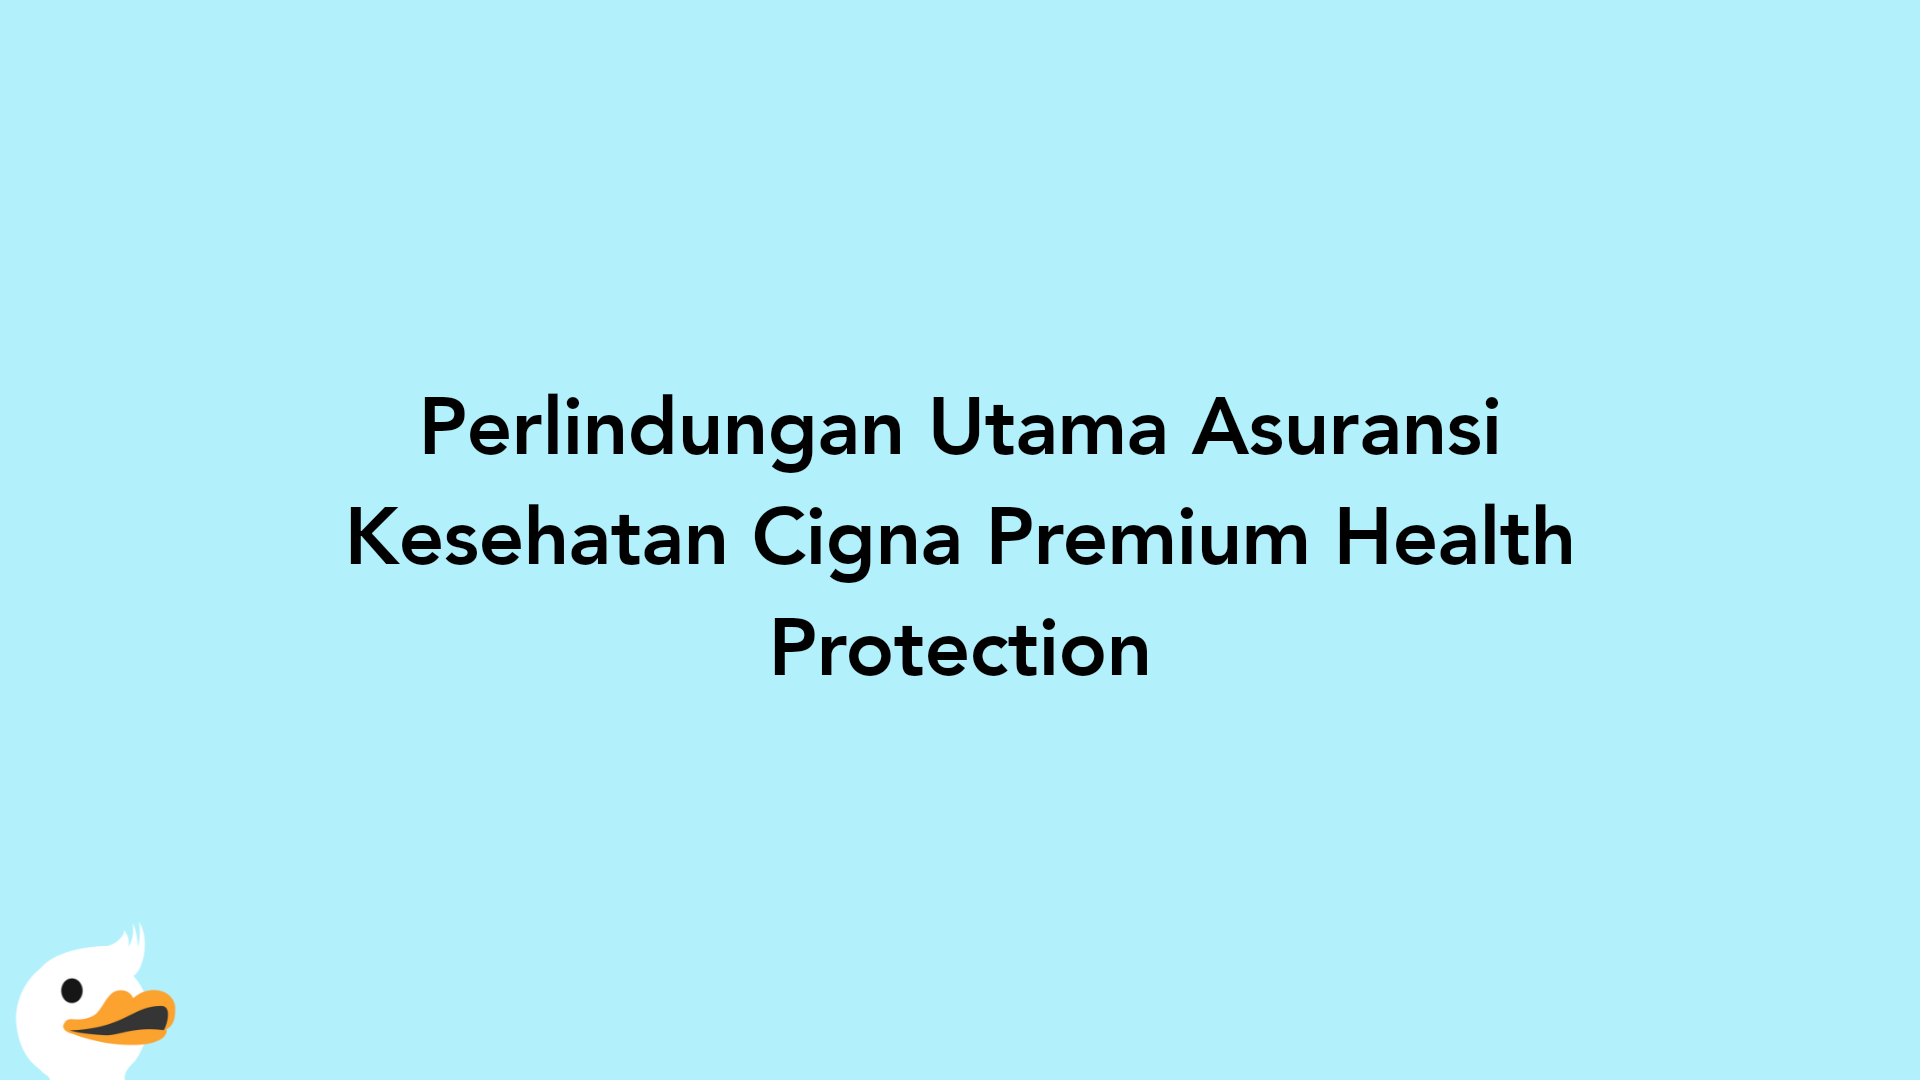 Perlindungan Utama Asuransi Kesehatan Cigna Premium Health Protection